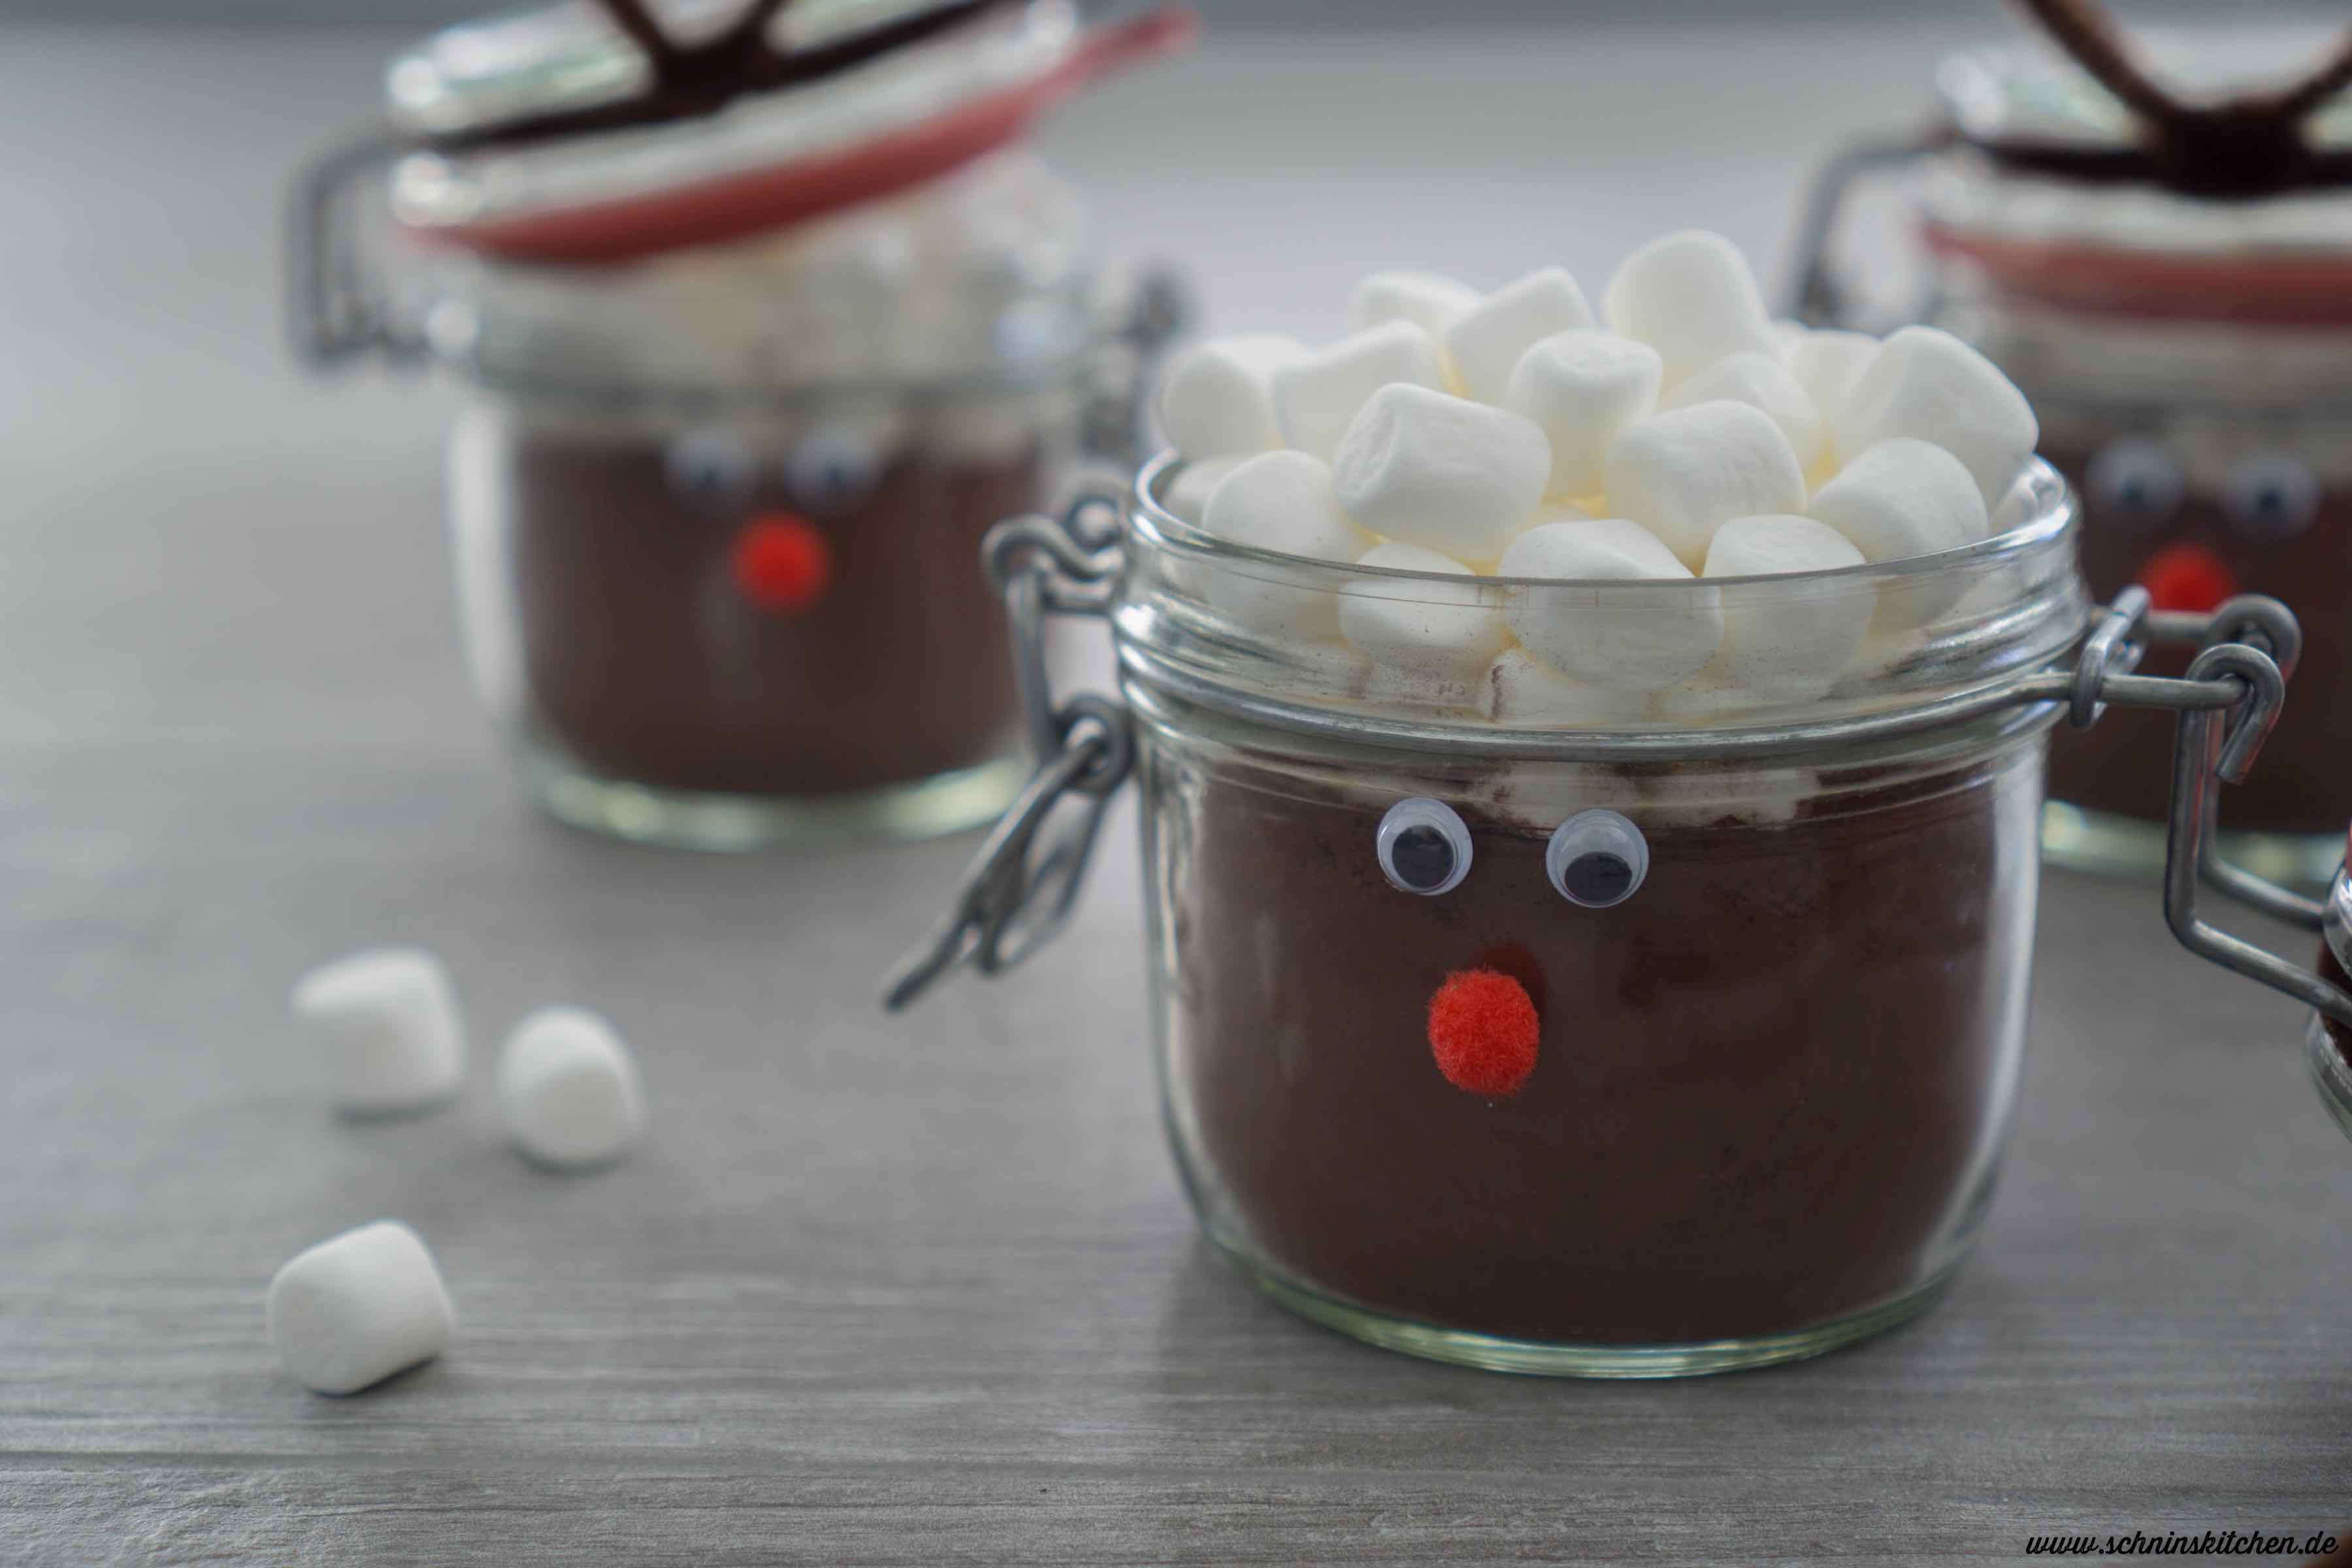 Weihnachtskakao-Mix selber machen - Rezept für heiße Schokolade als Geschenk aus der Küche. | www.schninskitchen.de